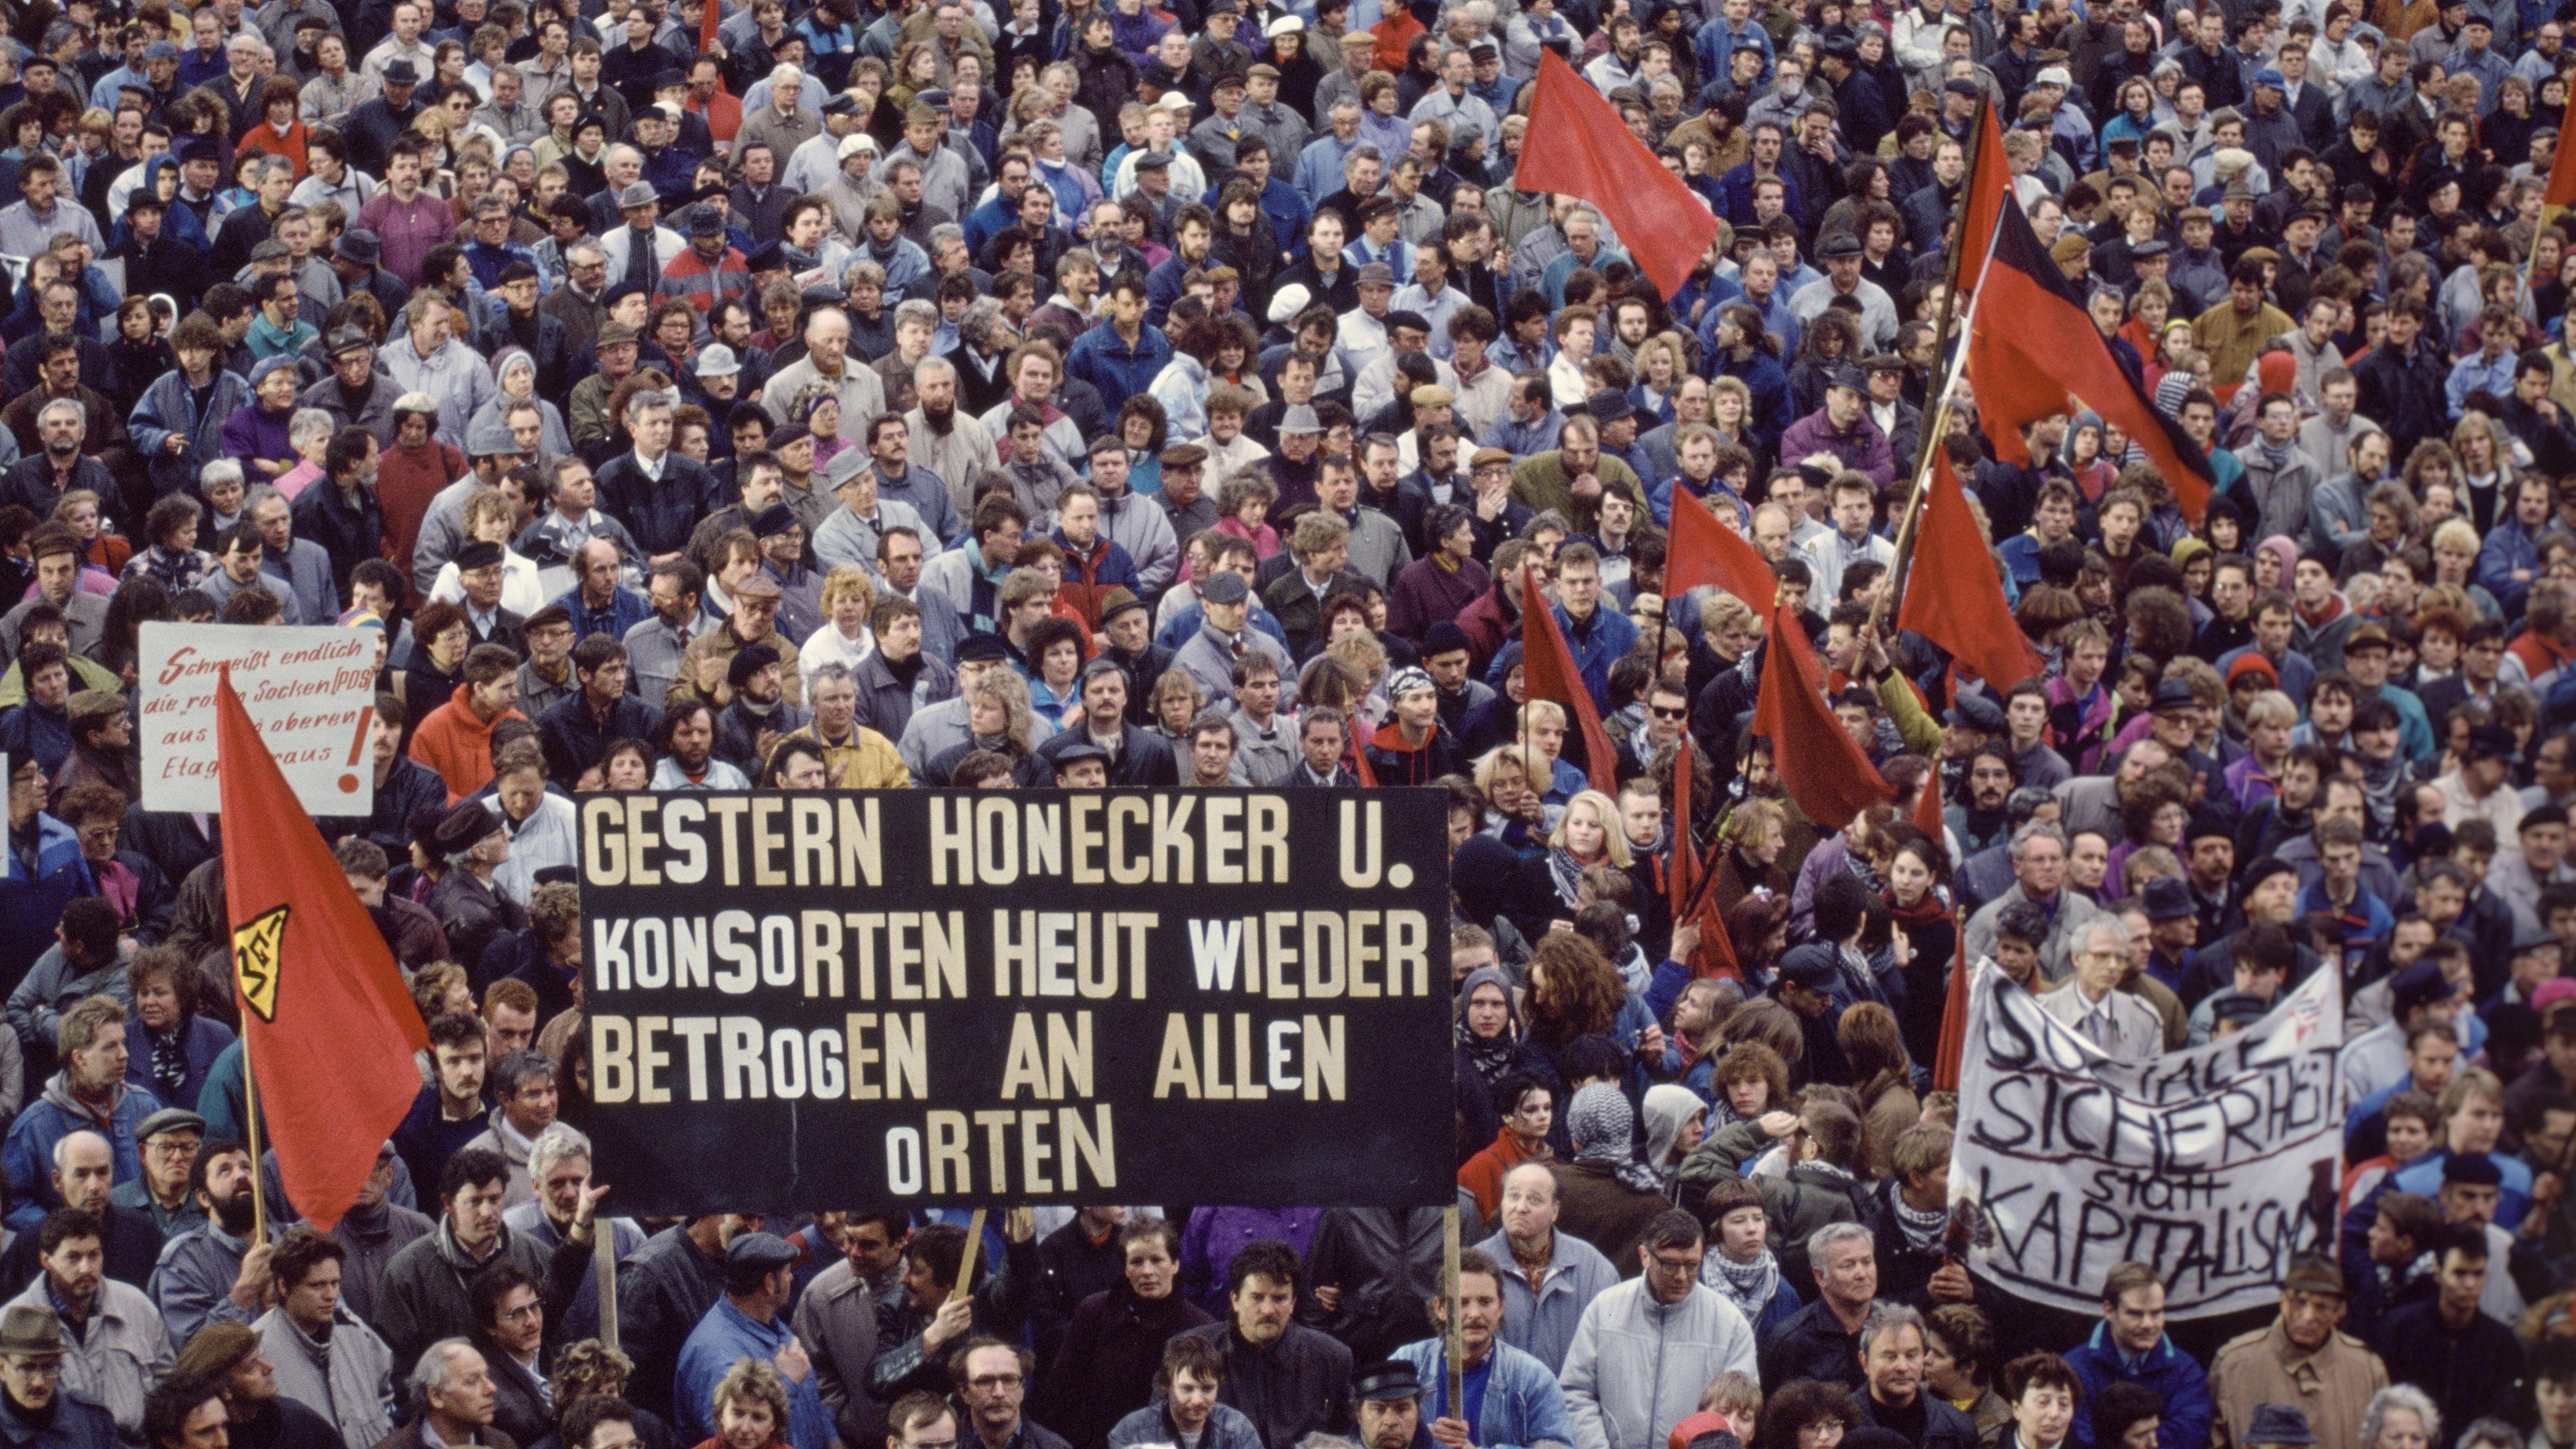 Eine Menschenmenge demonstriert in Leipzig gegen die Krise in Ostdeutschland nach der Wende. Auf dem Plakat im Vordergrund steht: „Gestern Honecker und Konsortien, heut' wieder betrogen an allen Orten“.